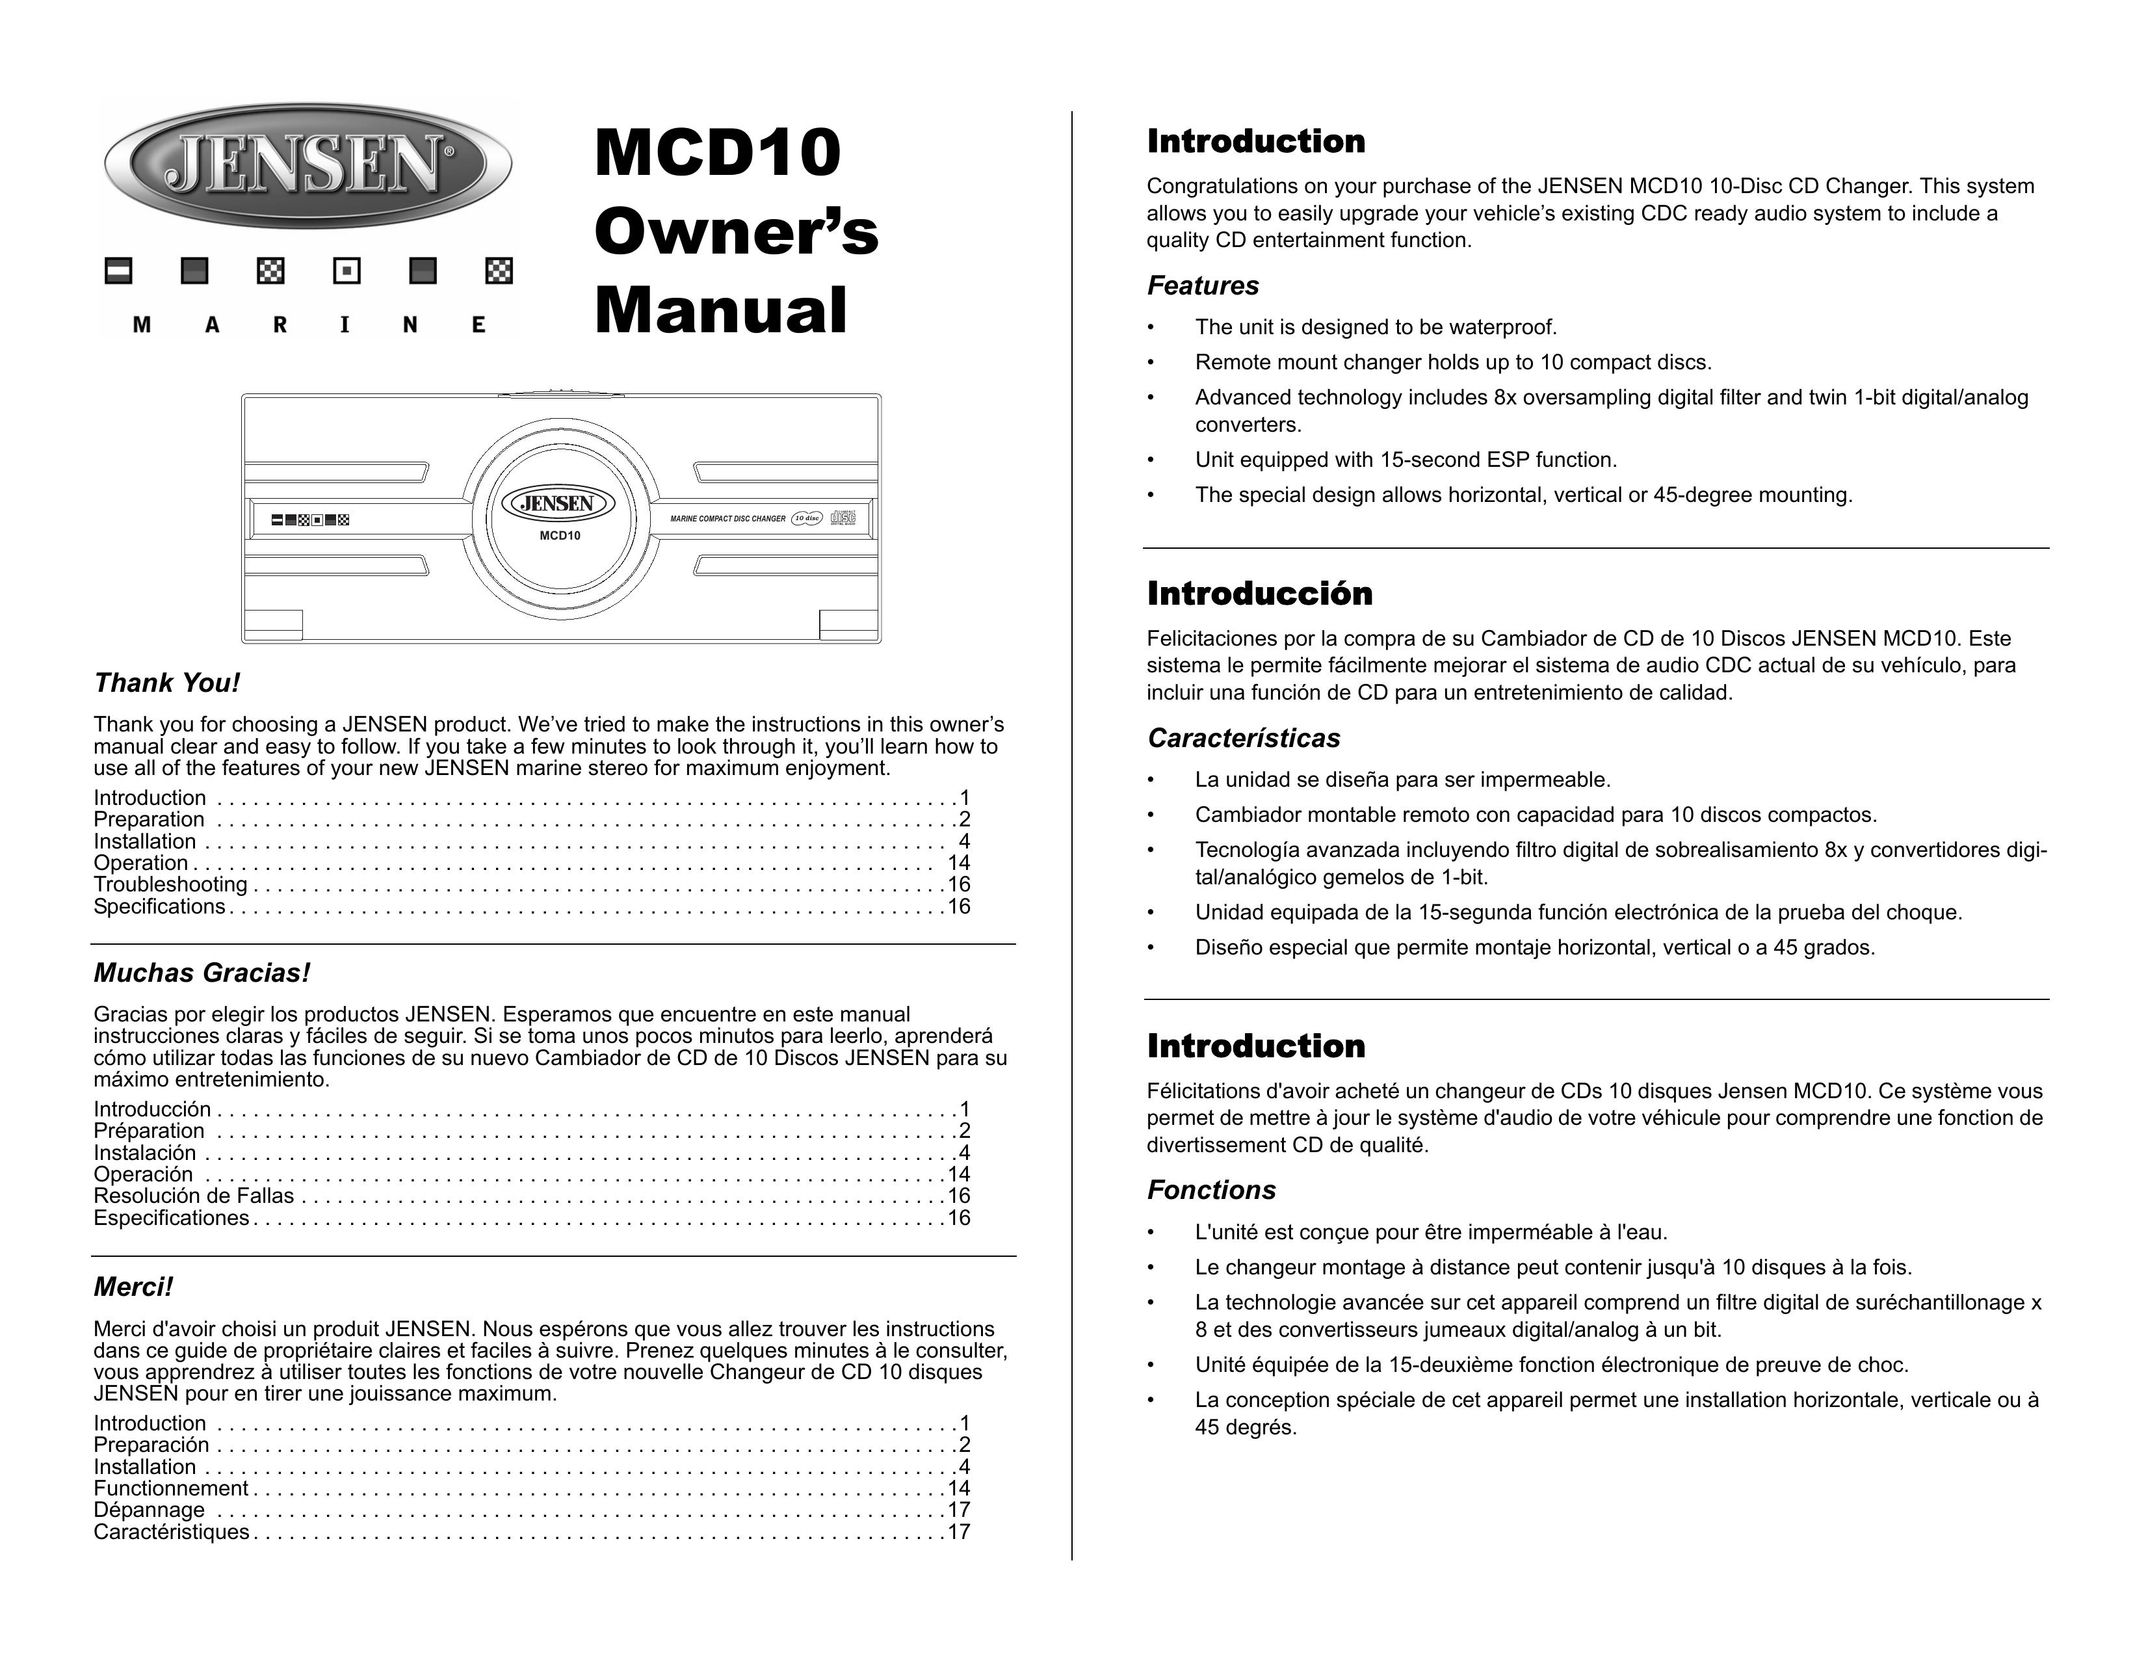 Jensen MCD10 Car Stereo System User Manual